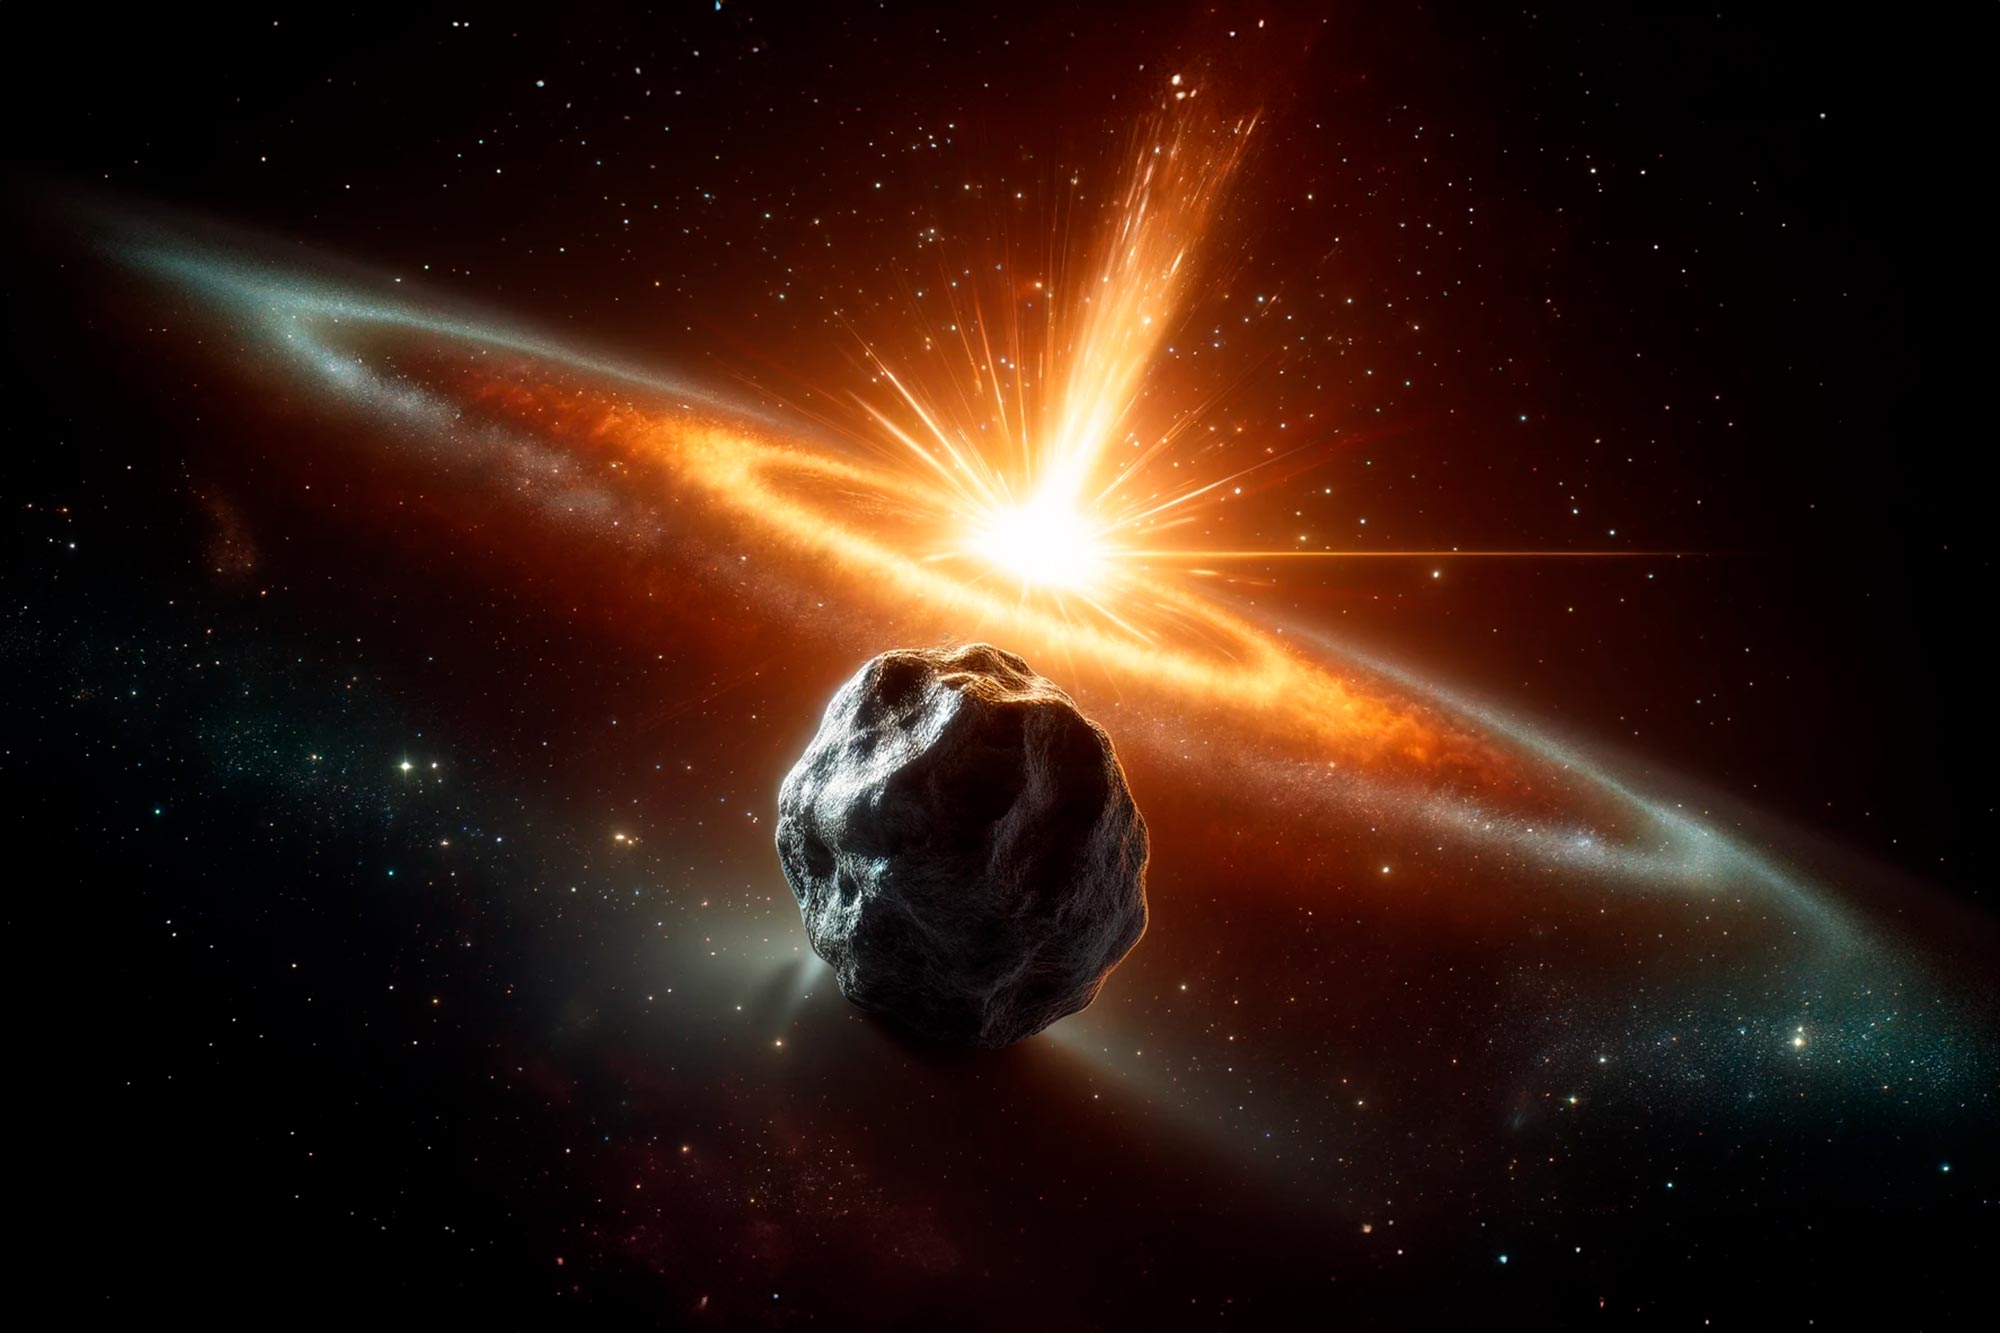 Un descubrimiento sin precedentes en meteoritos desafía los modelos astrofísicos